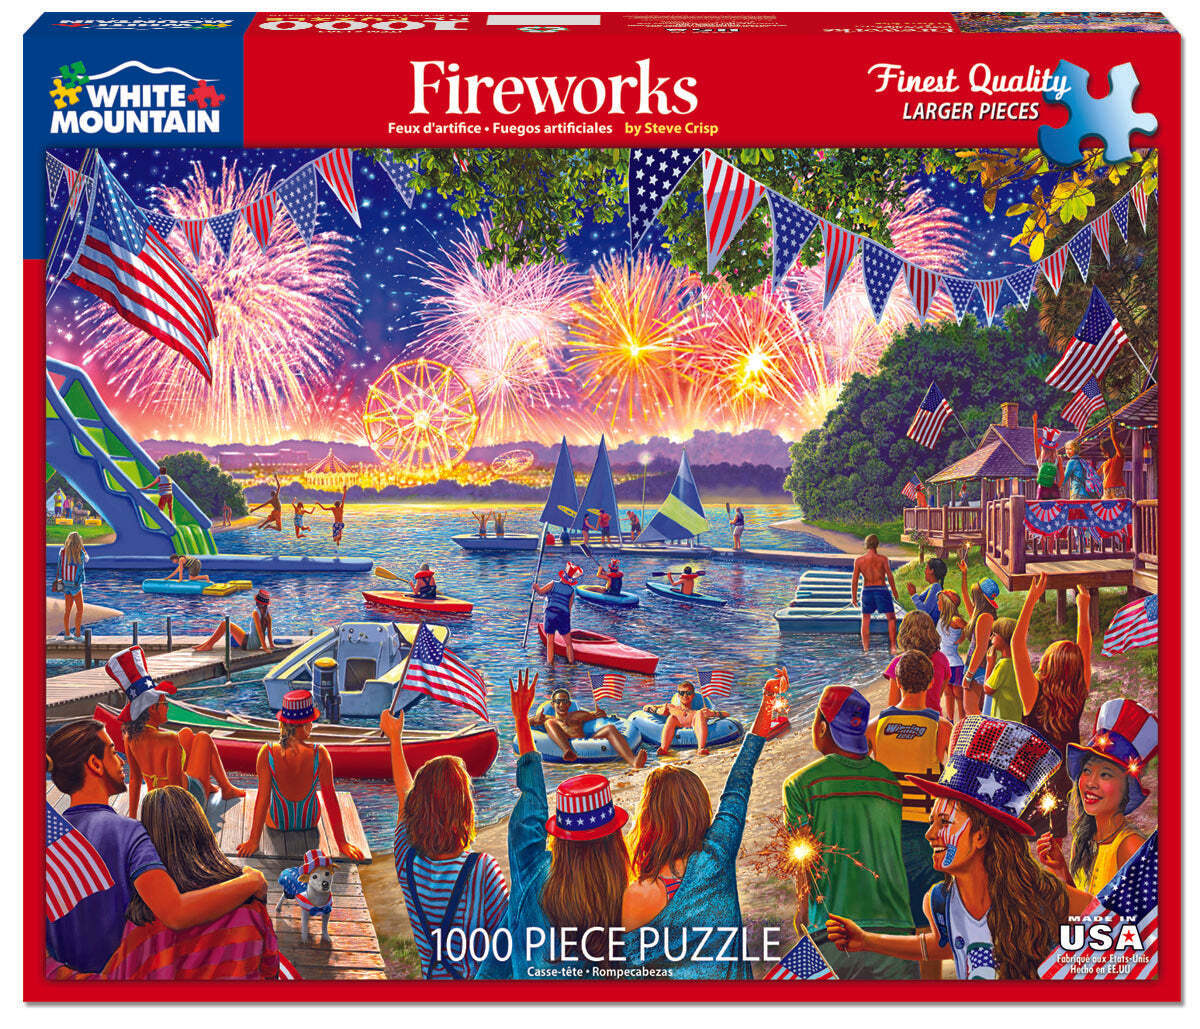 Fireworks (1585pz) - 1000 Piece Jigsaw Puzzle